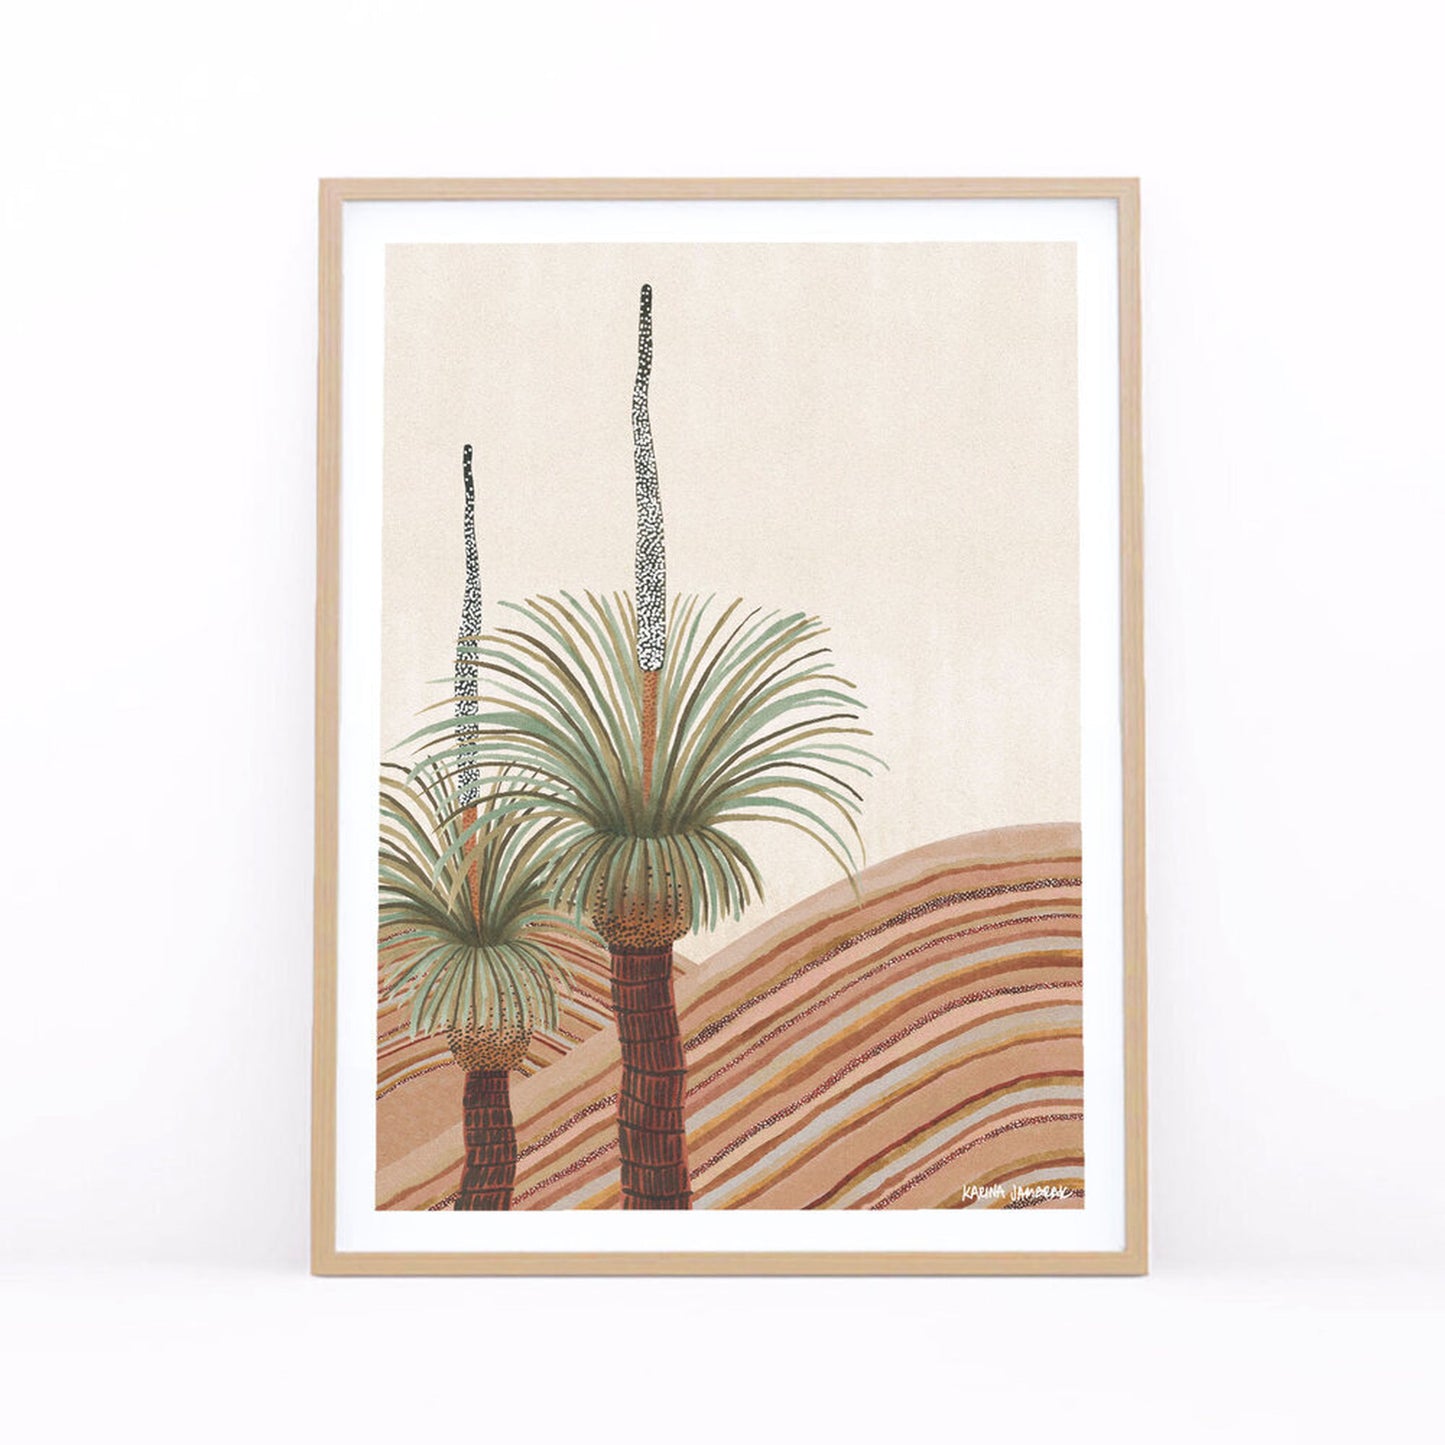 【karina jambrak art 】grass tree dunes